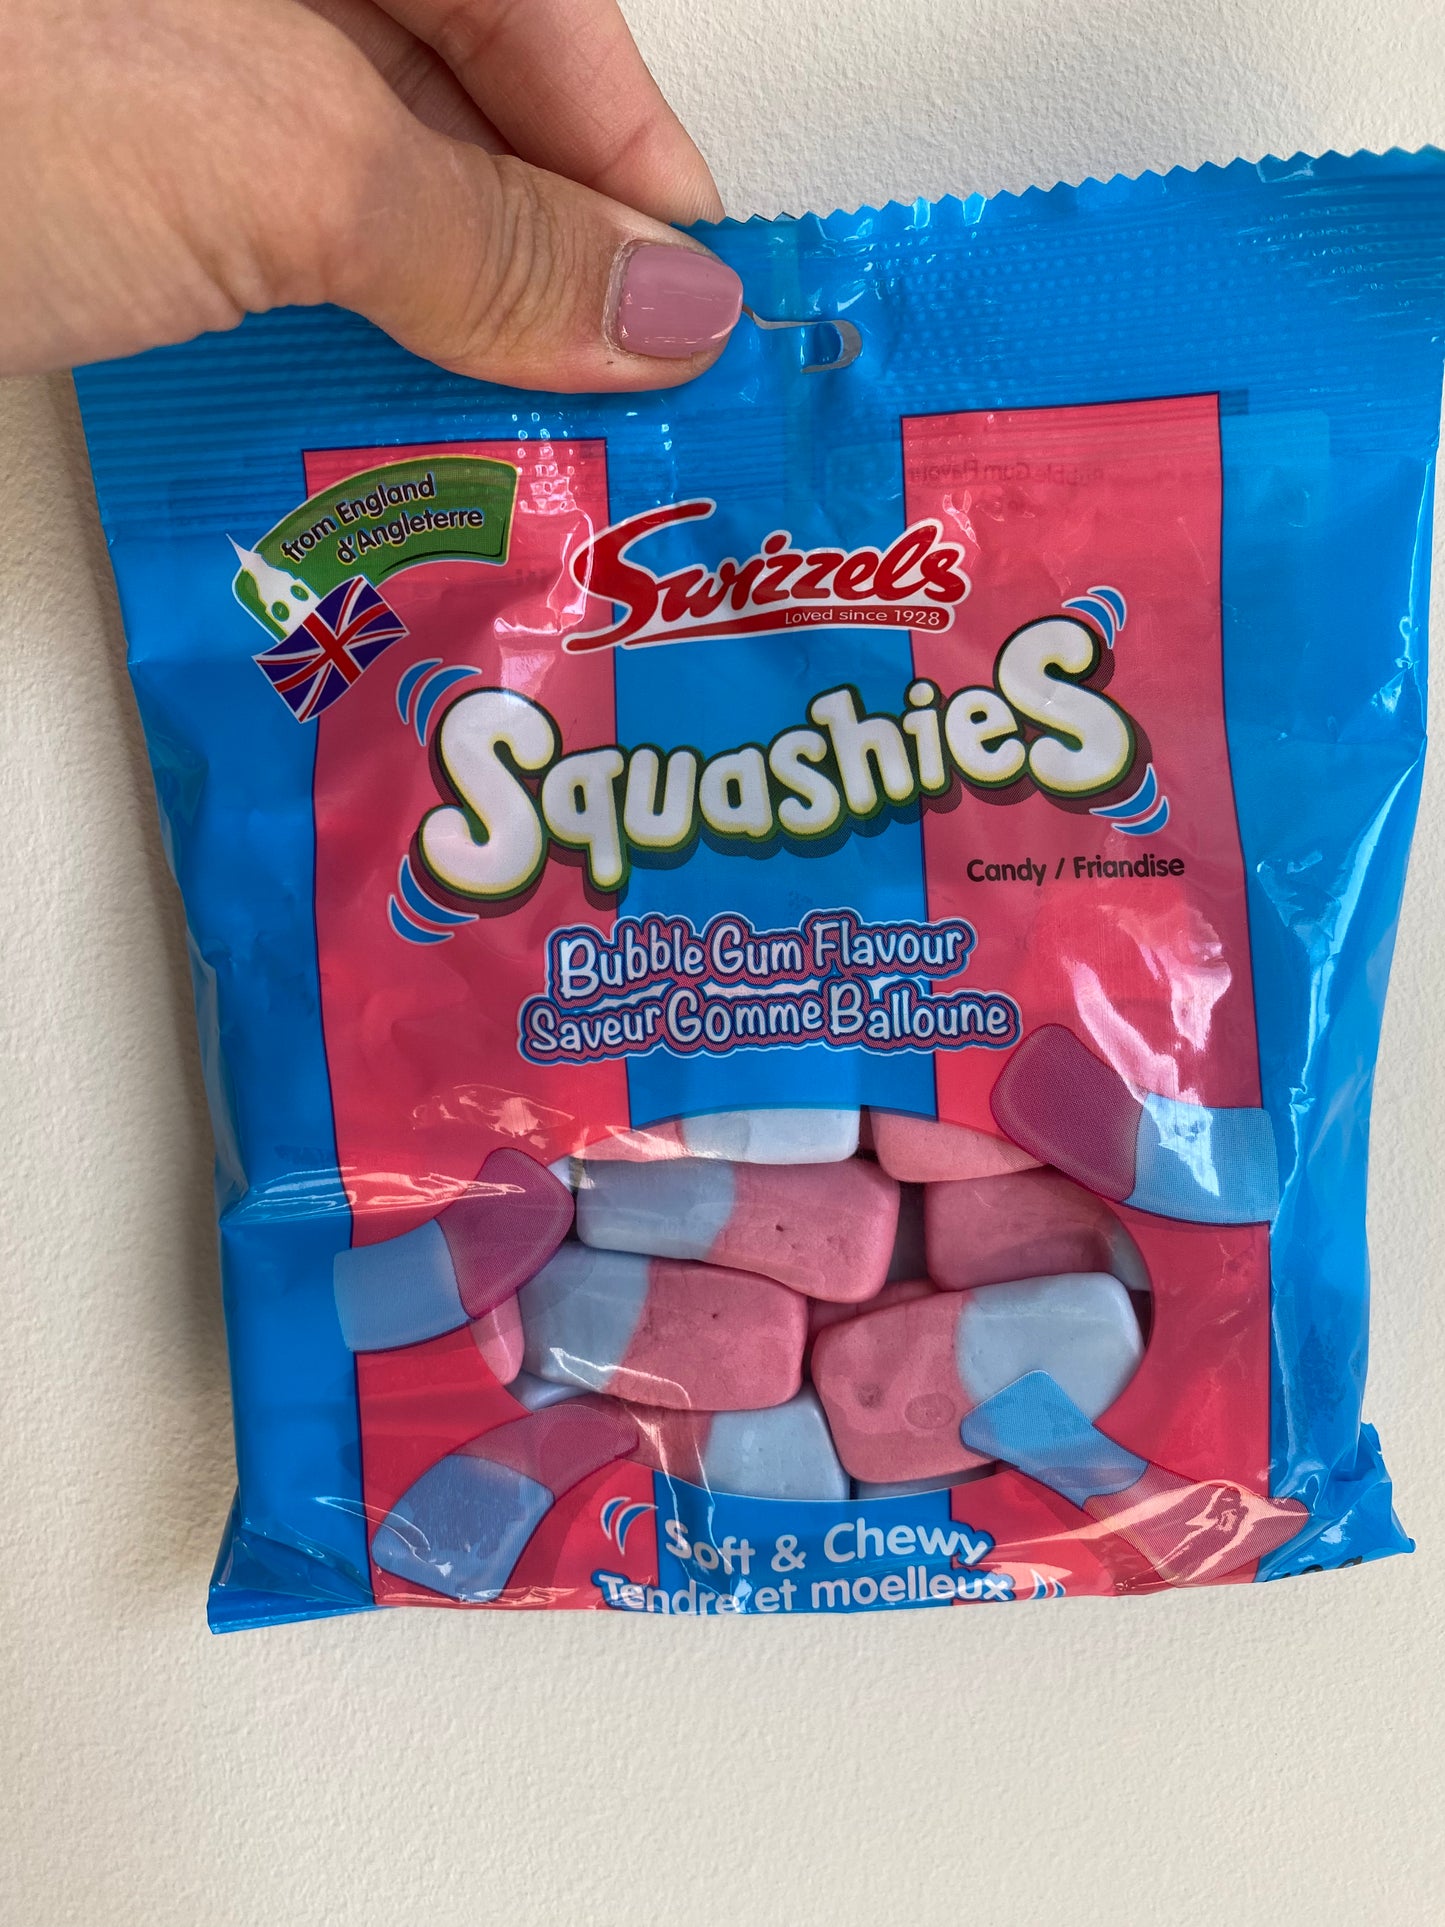 Swizzels Squashies Bubble Gum Flavour - 160 g